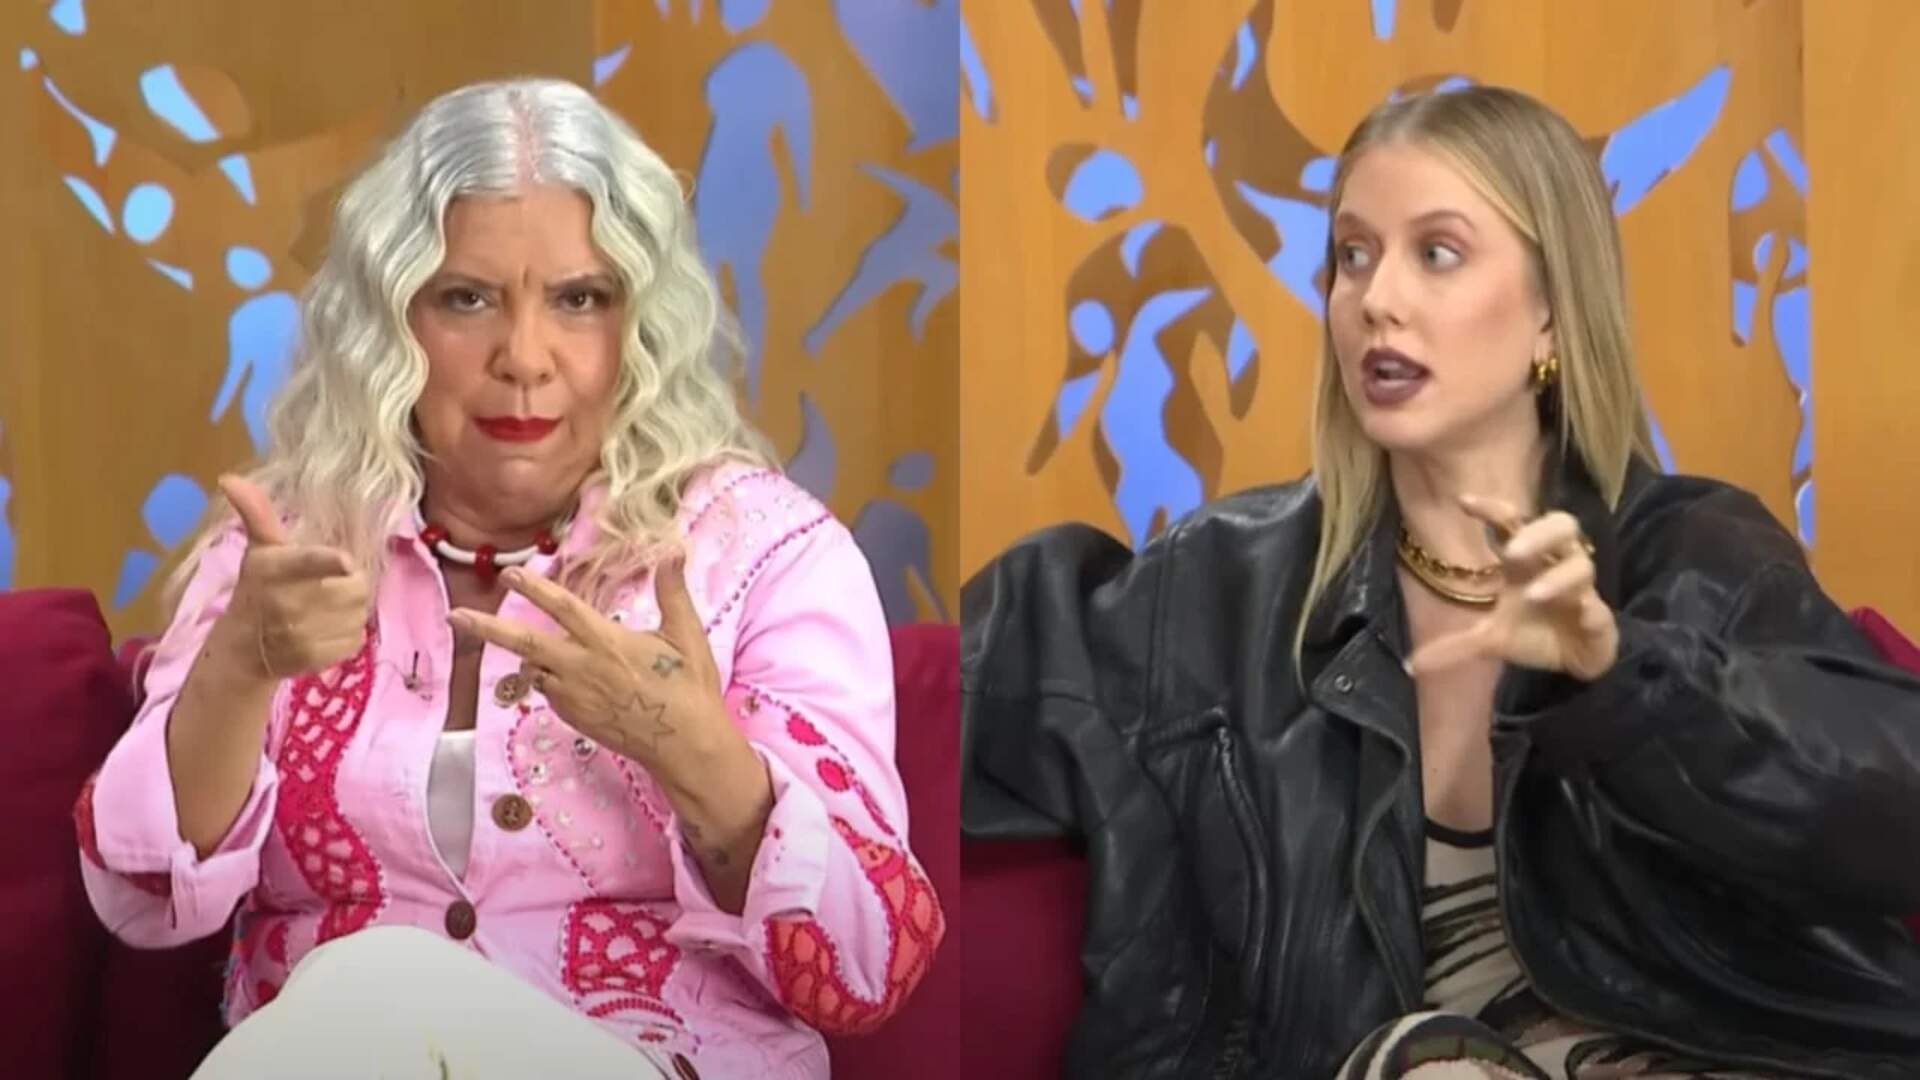 Durante o Saia Justa, Astrid Fontenelle e Gabriela Prioli batem boca por motivo inusitado - Metropolitana FM